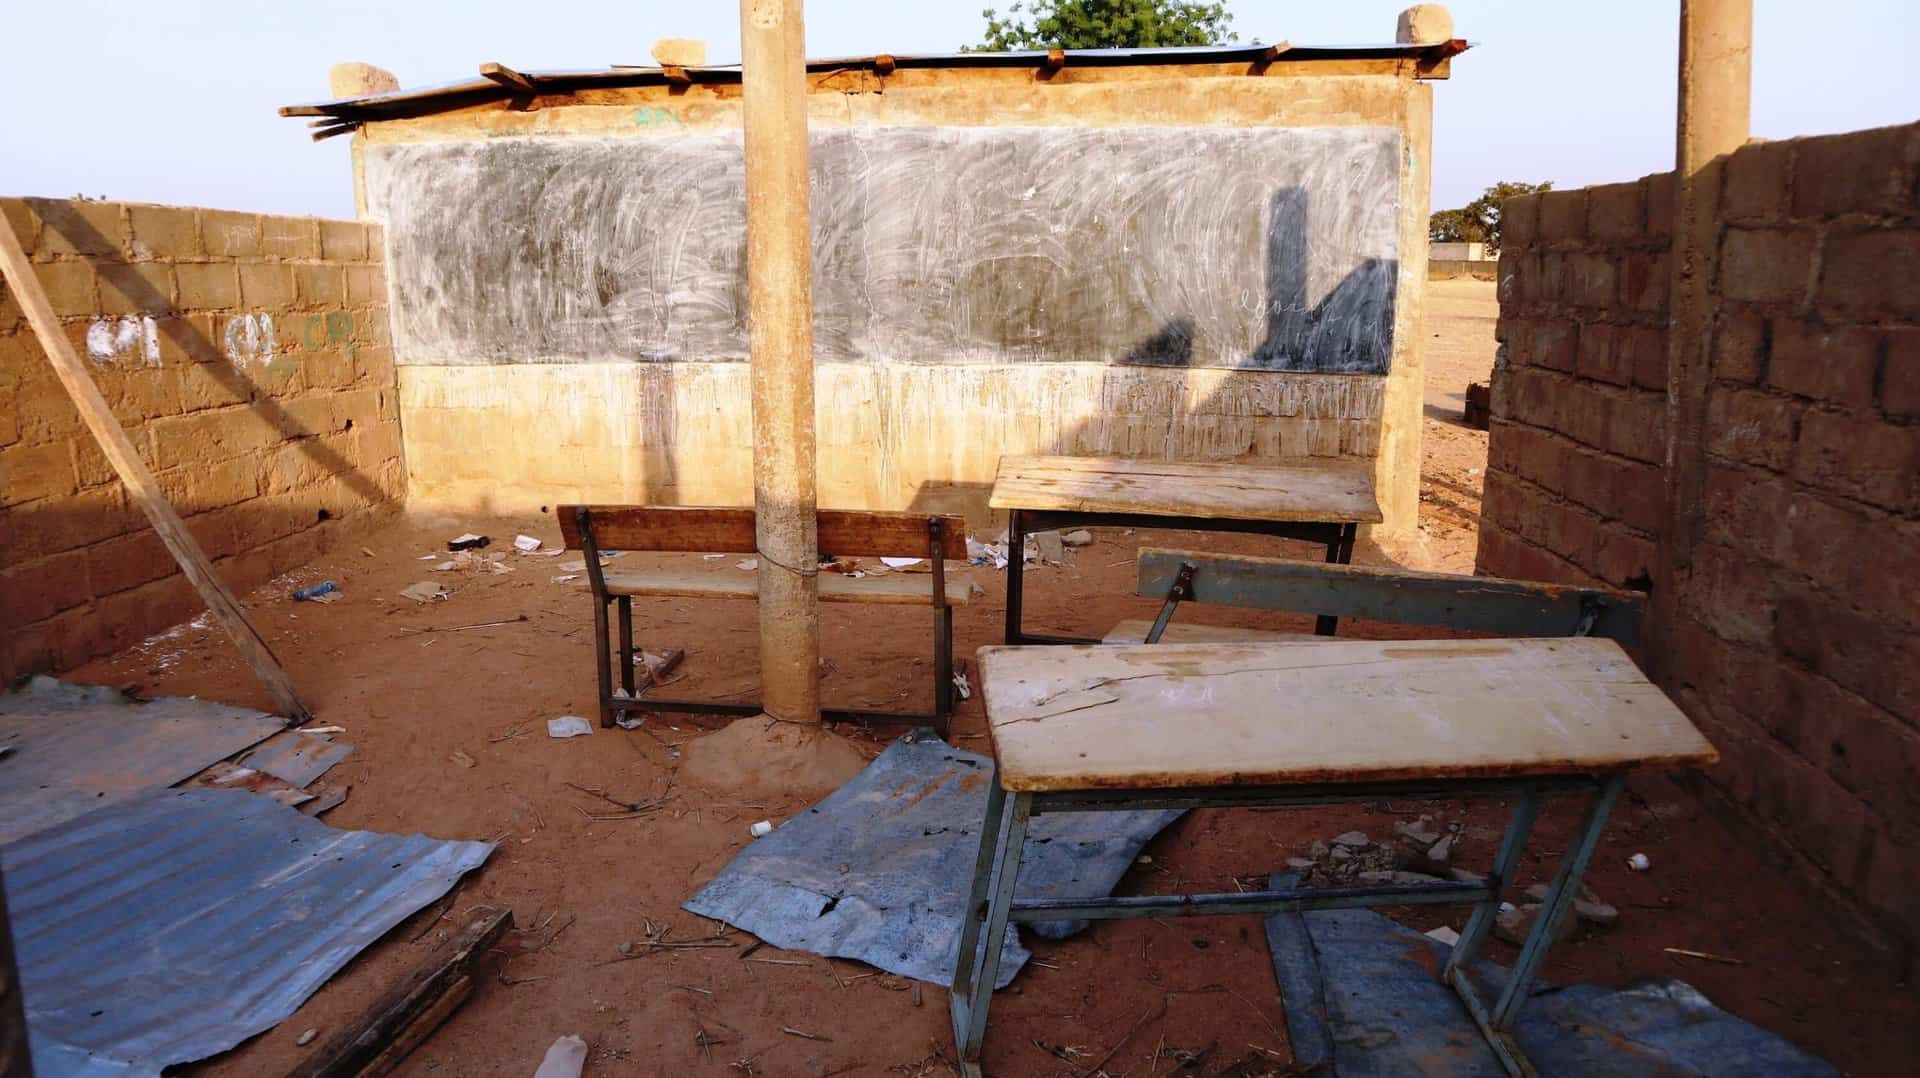 Aide et action s'inquiète de la fermeture des écoles au Burkina Faso à cause de la menace terroriste